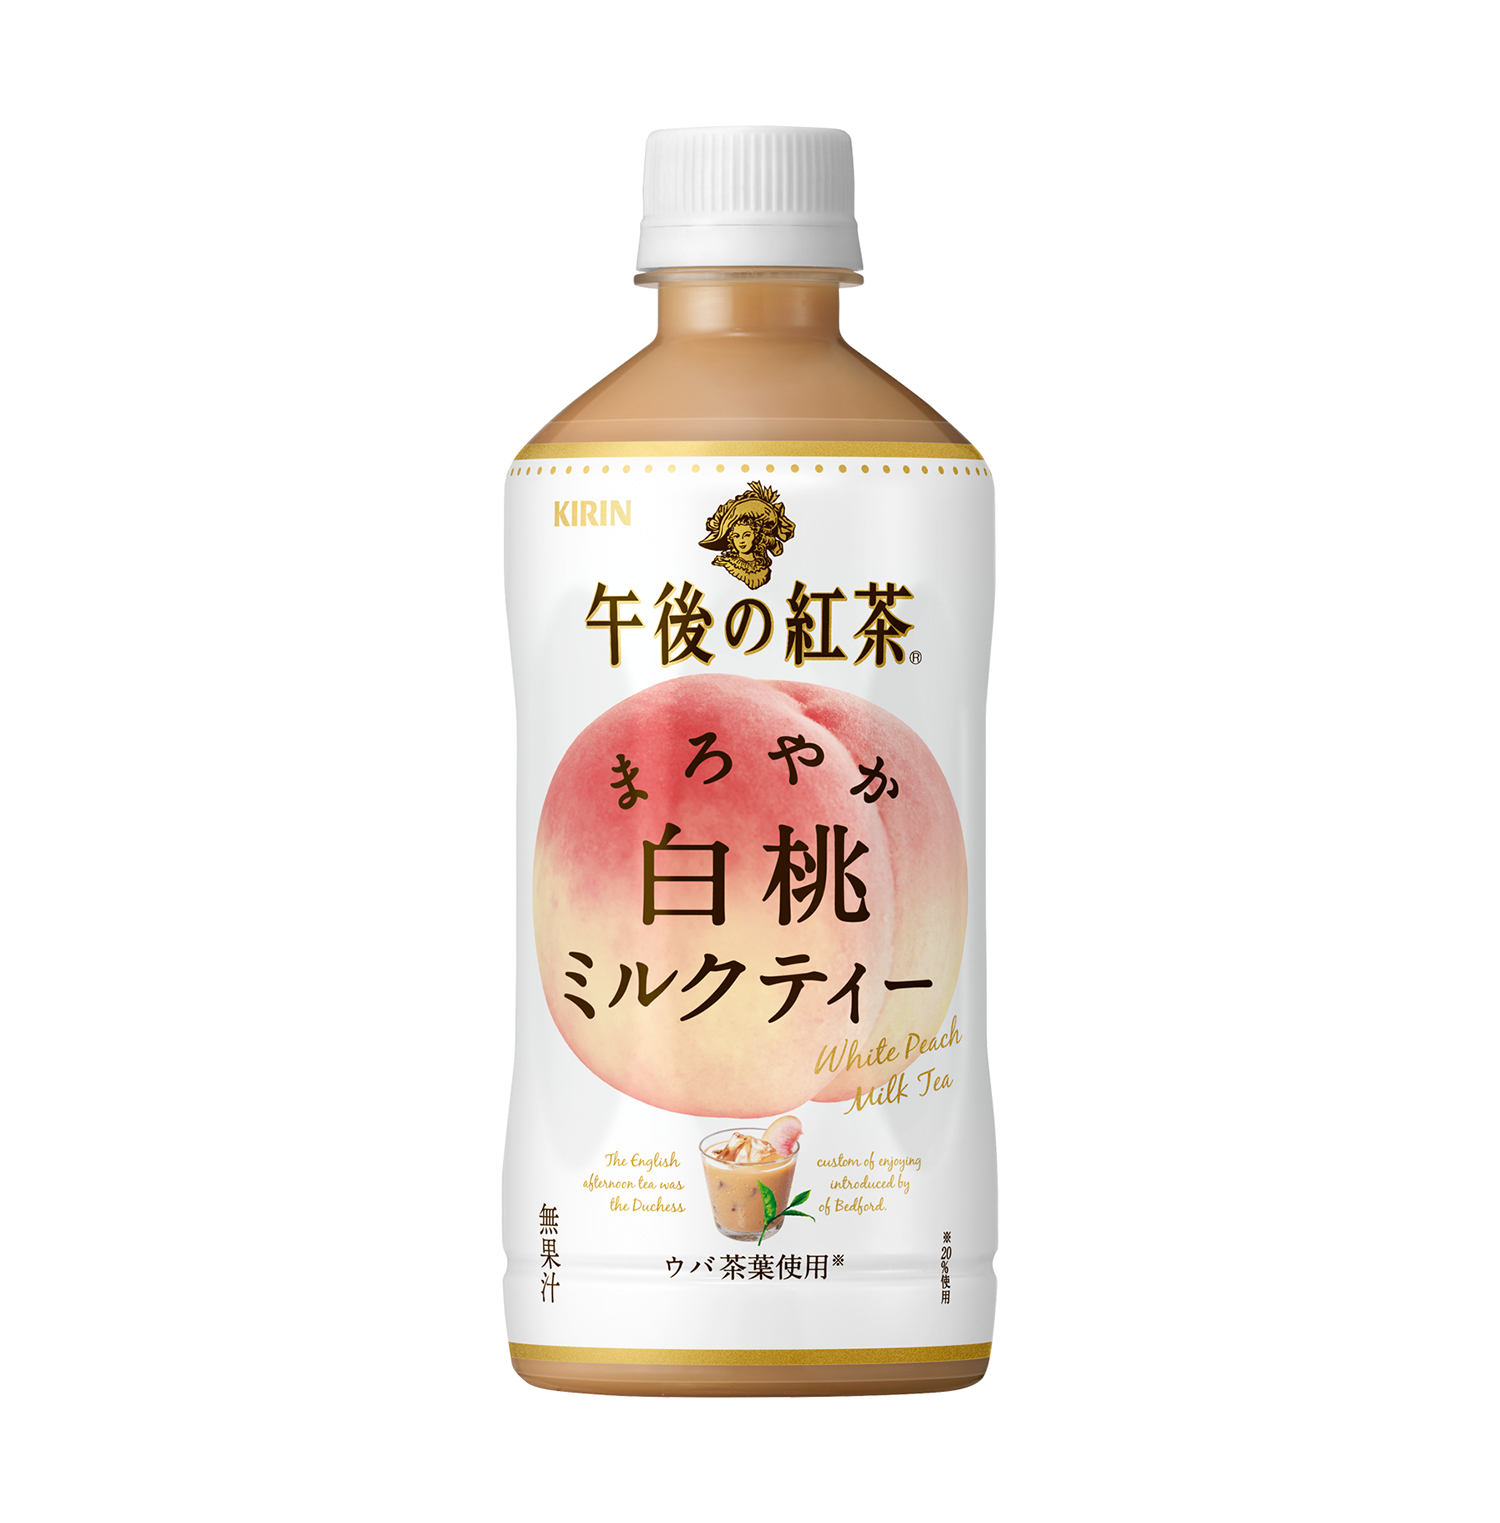 白桃の芳醇な香りとミルクの上質なコクが楽しめる キリン 午後の紅茶 まろやか白桃ミルクティー 新発売 Emo Miu エモミュー